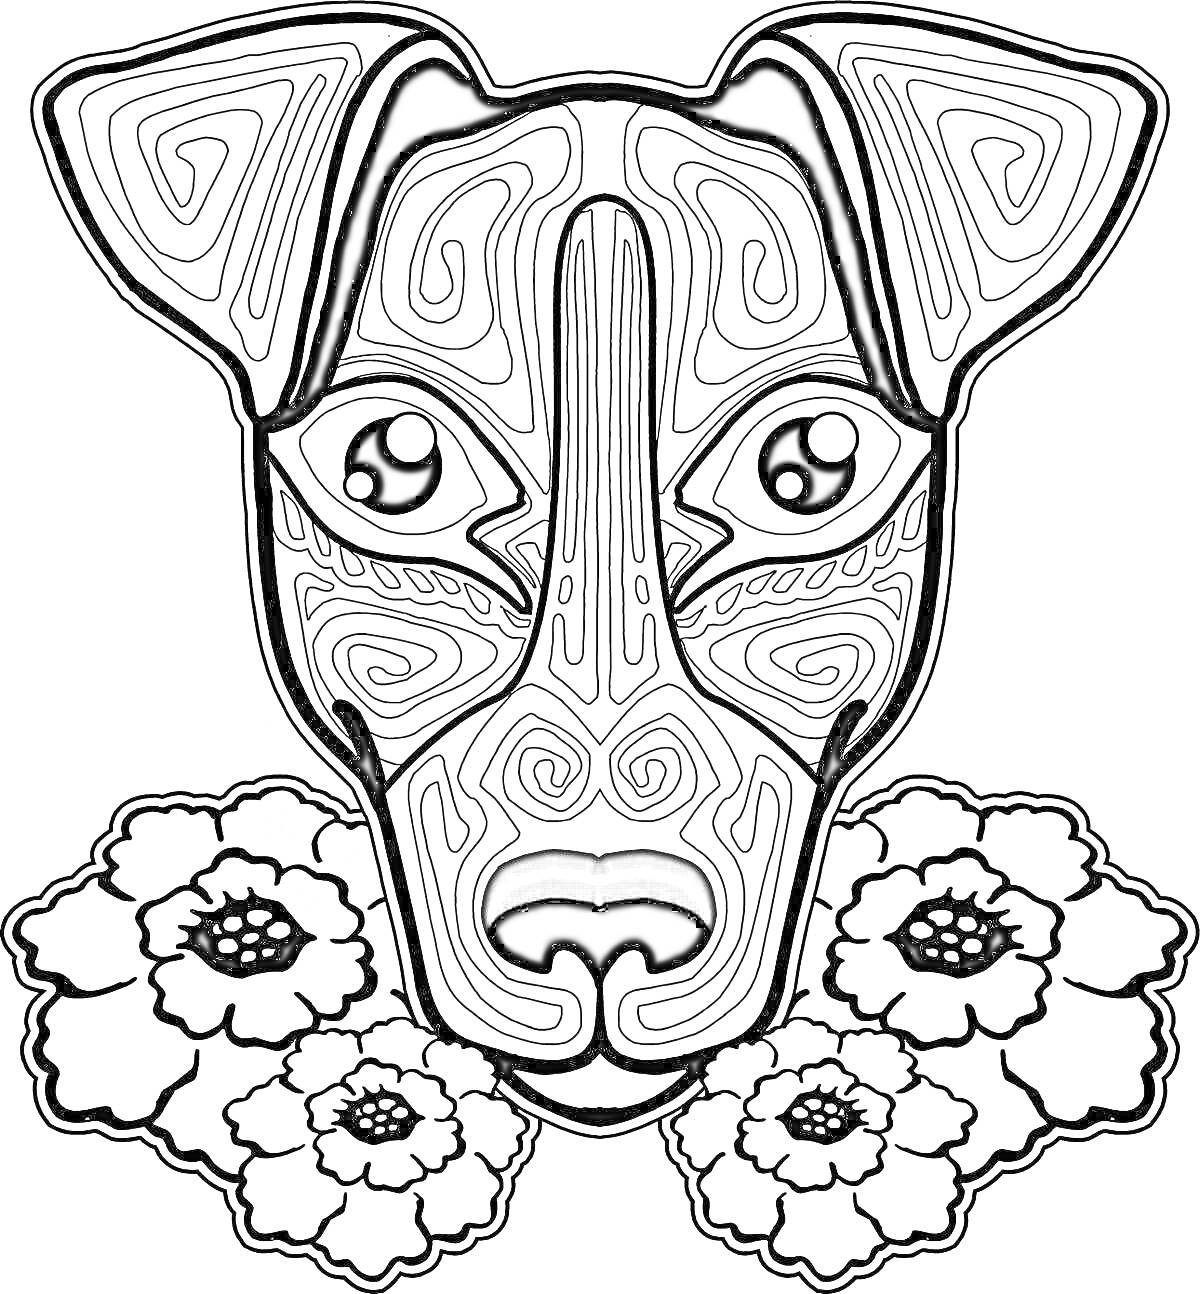 Раскраска Собачка с цветами антистресс, лабиринтный узор на морде, большие глаза, три цветка